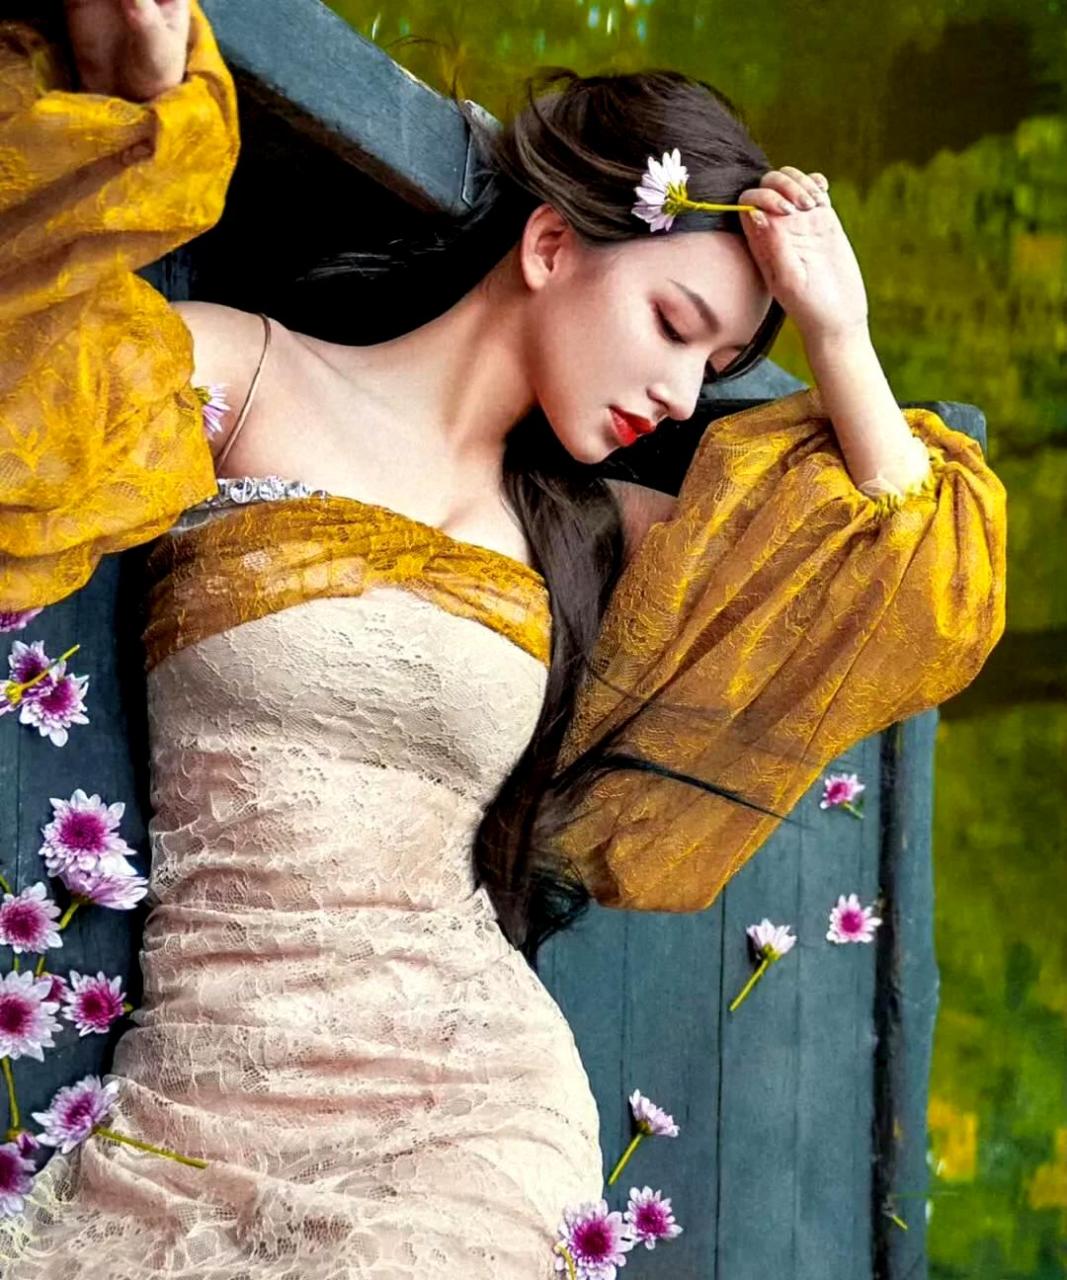 程潇穿着一袭草木色的古典礼服,宛如法式油画中的女主角,散发出高贵